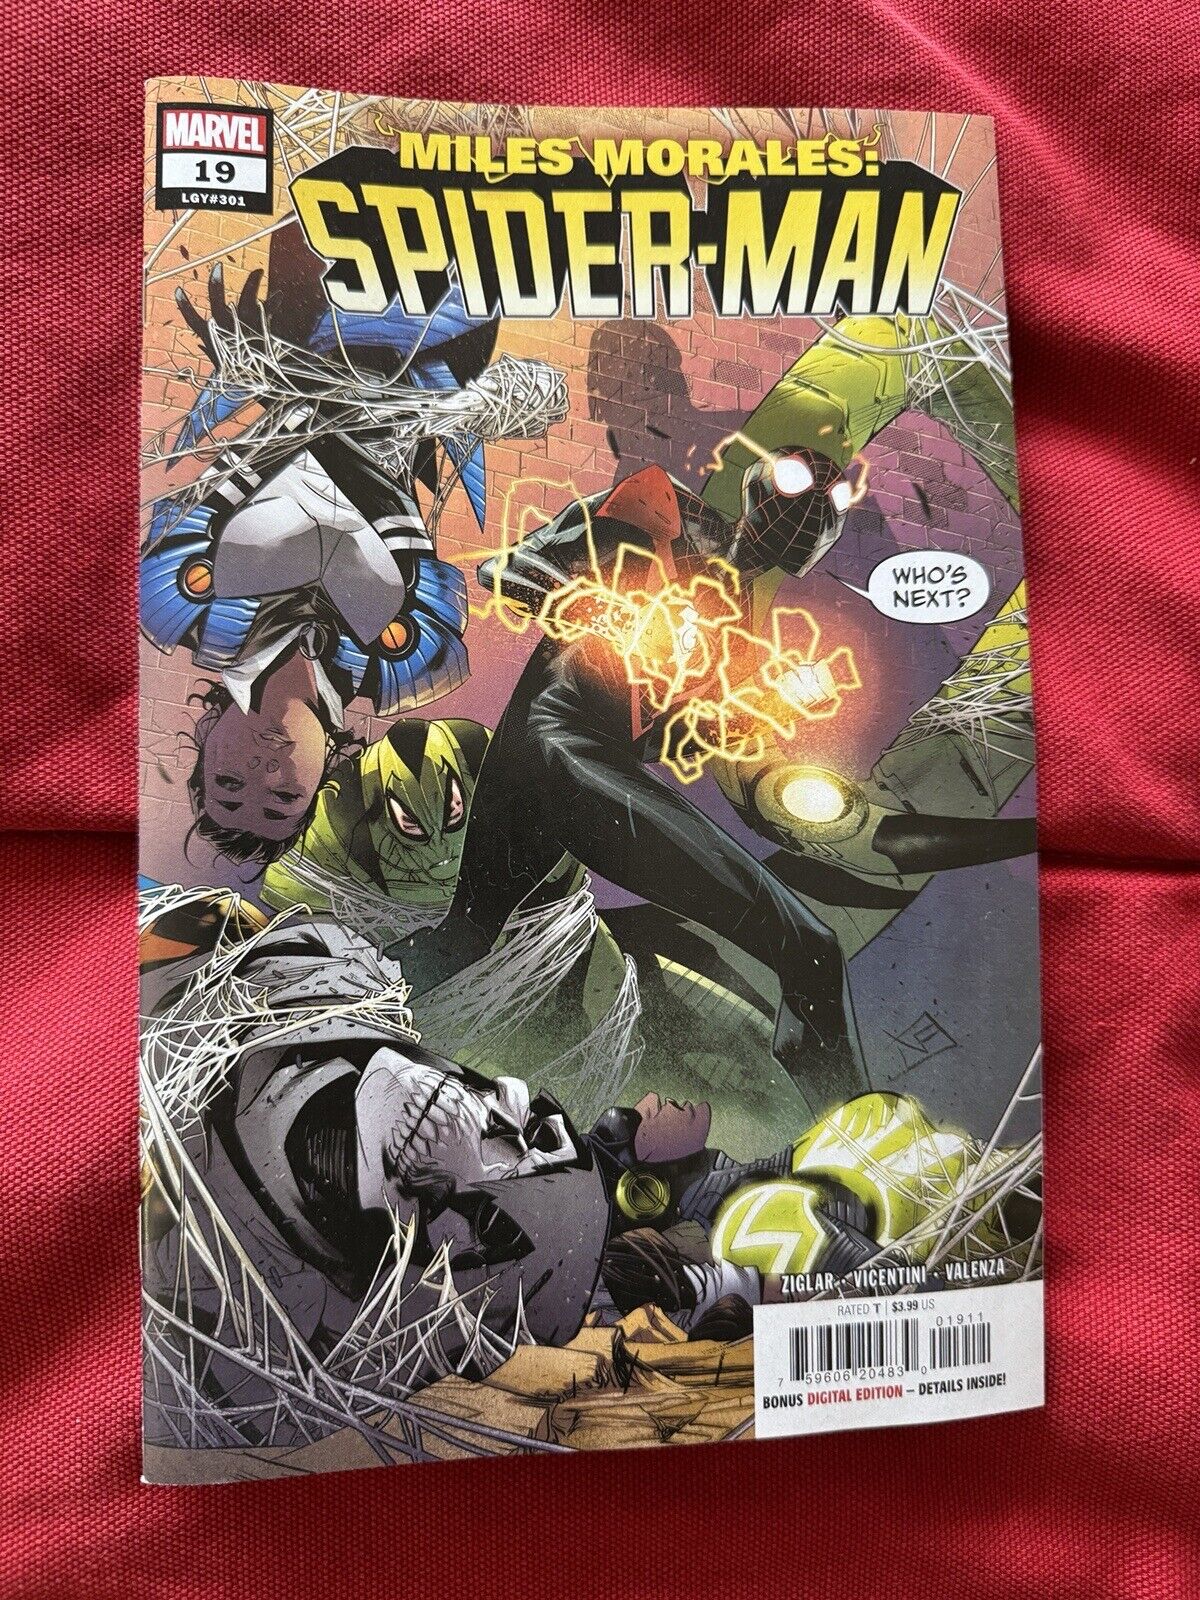 Miles Morales: Spider-Man (2023) Issue #19 - Cody Ziglar VF+ (Marvel Comics)